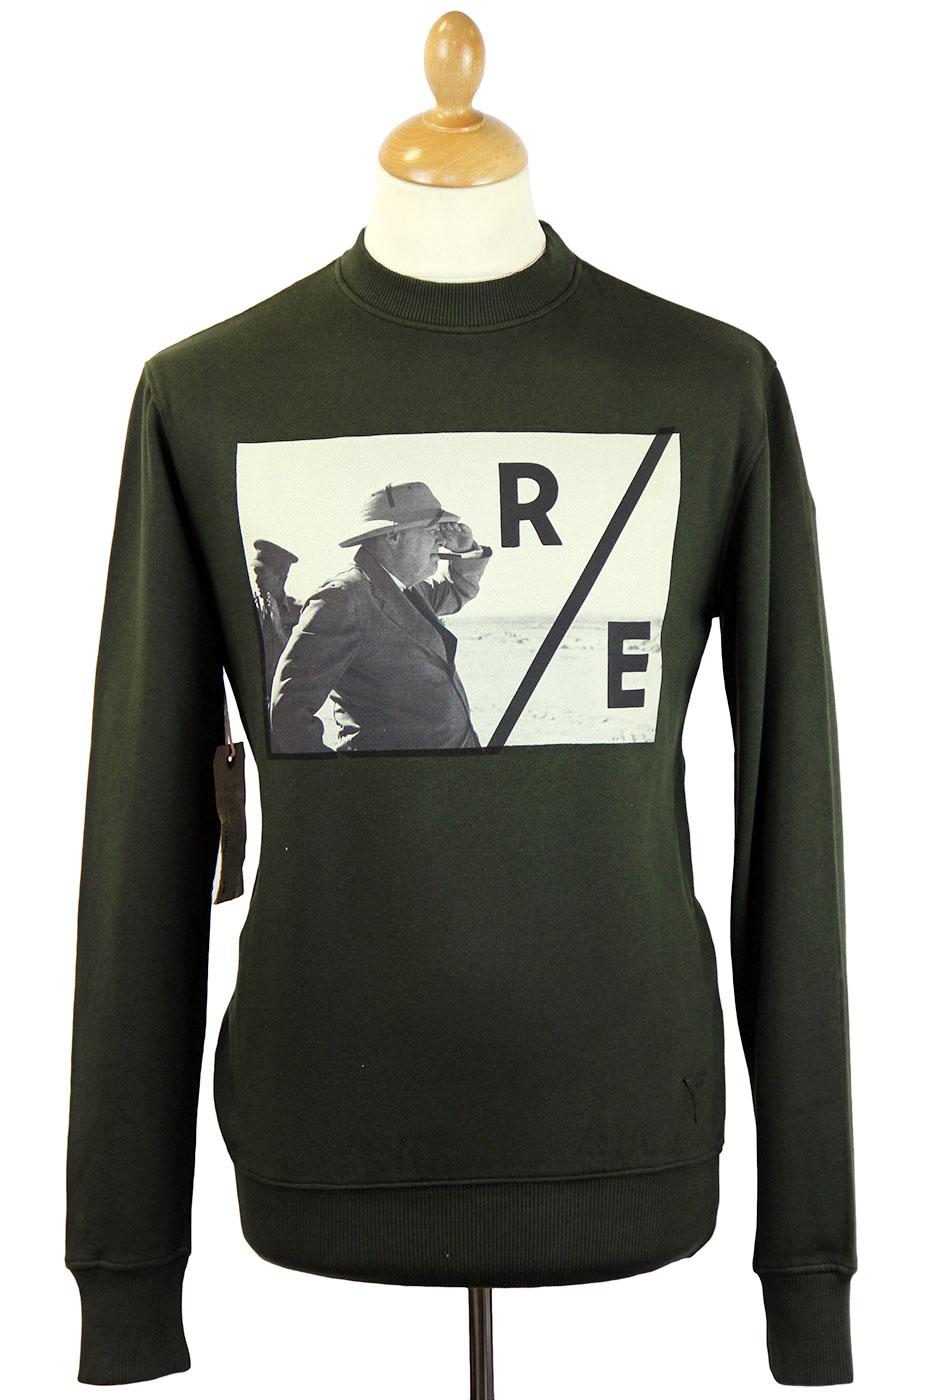 Mr Churchill REALM & EMPIRE Retro Photo Sweater